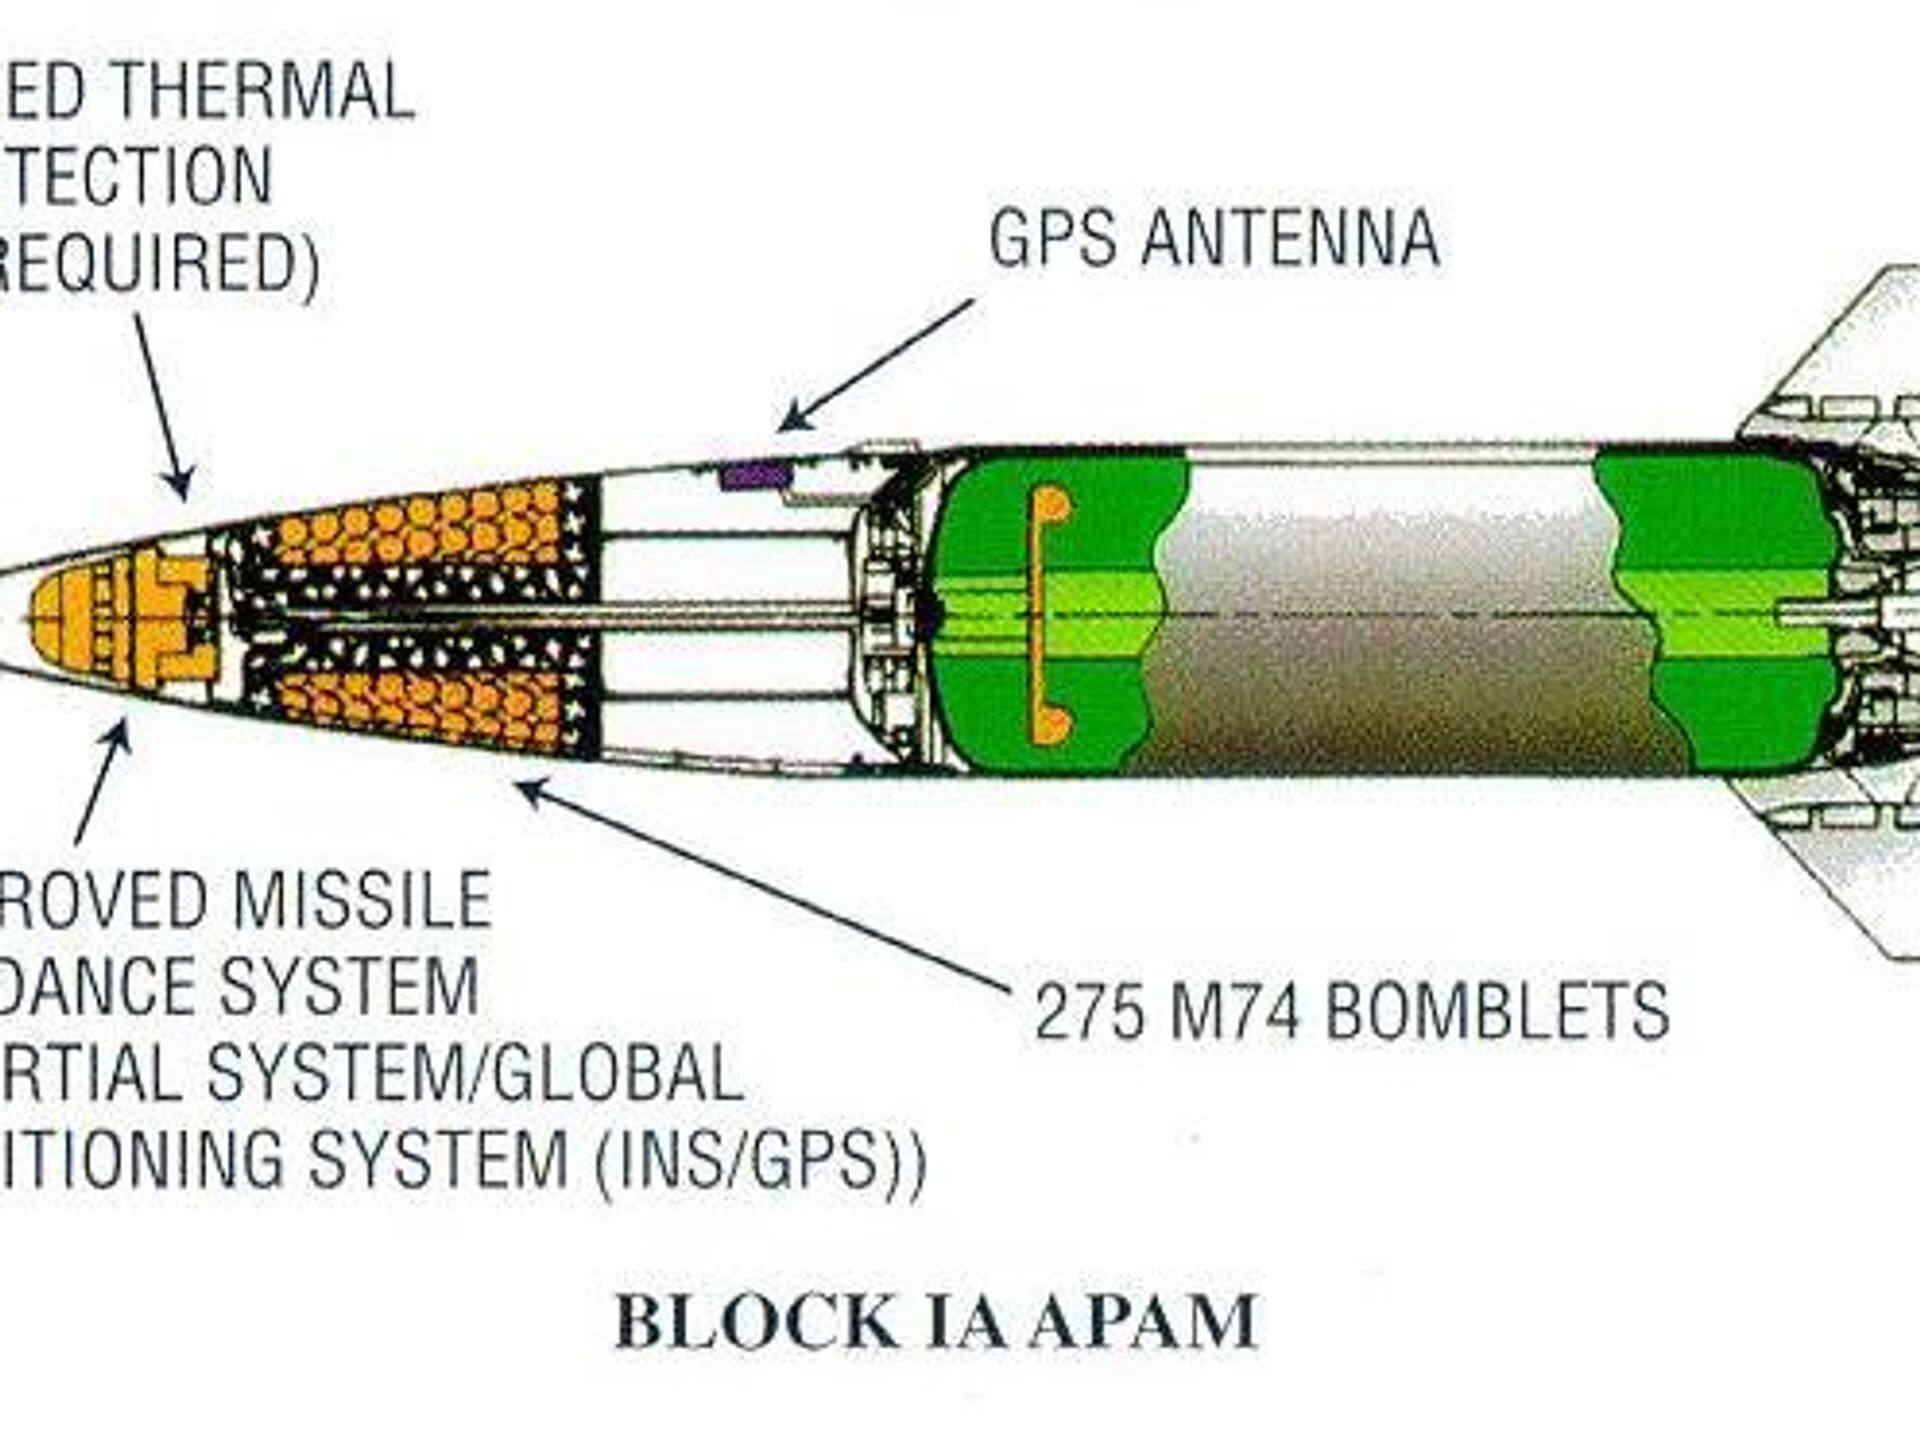 Atacms ракета характеристики дальность поражения. MGM-140 atacms дальность. Ракеты atacms дальность. Ракета 9м723 схема. MGM 140 atacms ракета характеристики.